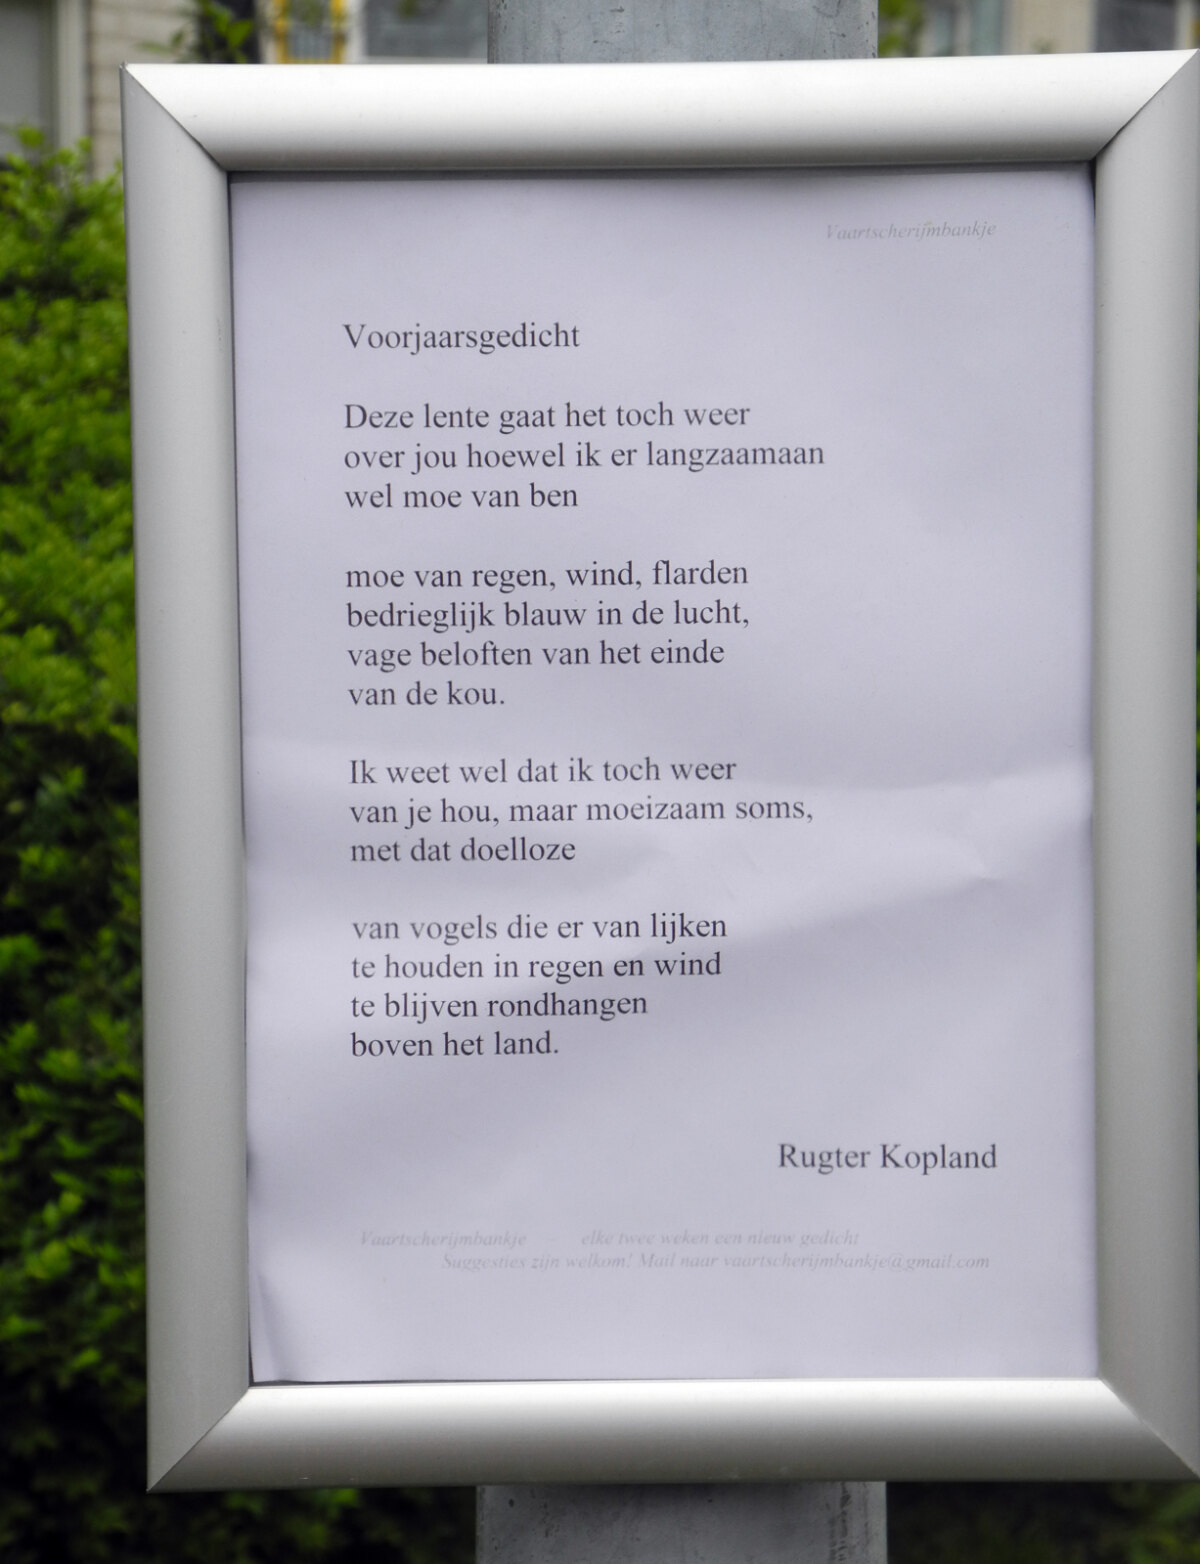 'Voorjaarsgedicht' van Rutger Kopland. Foto: JvW